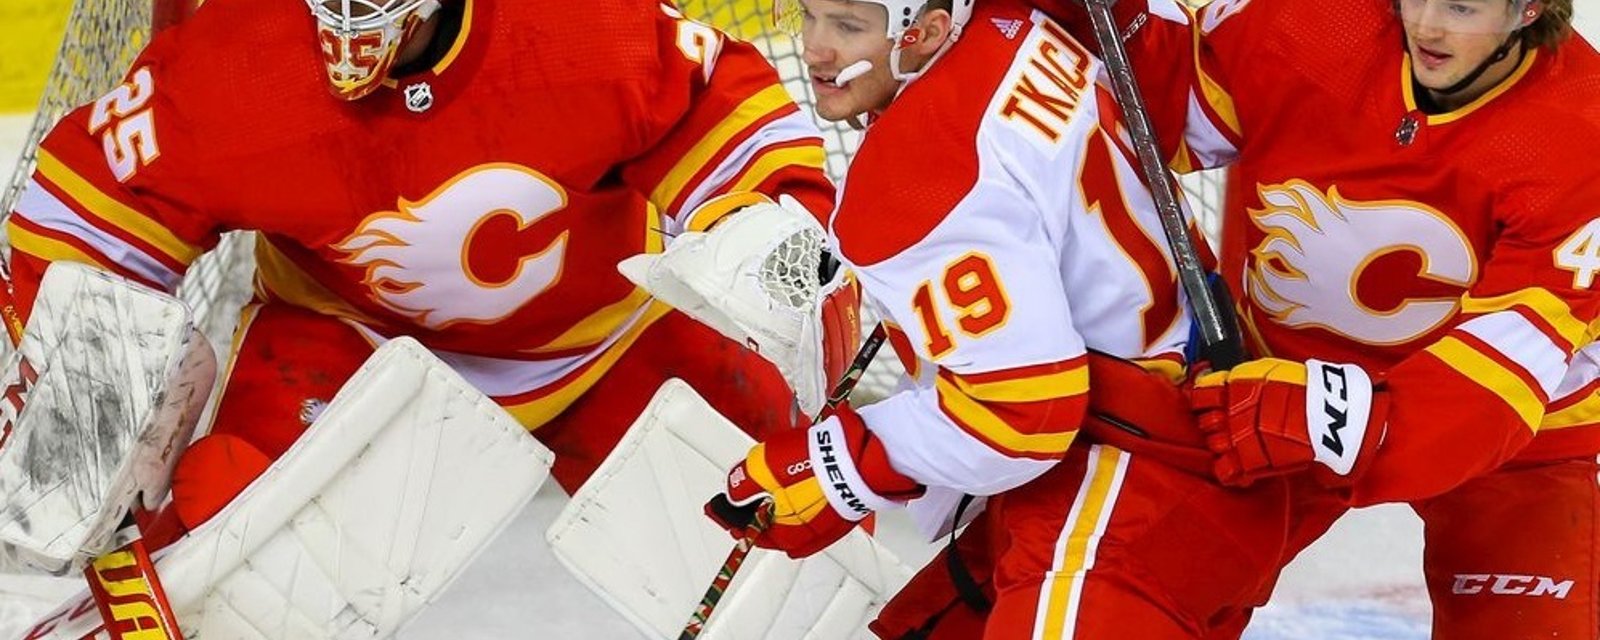 La LNH place les Flames de Calgary en arrêt forcé